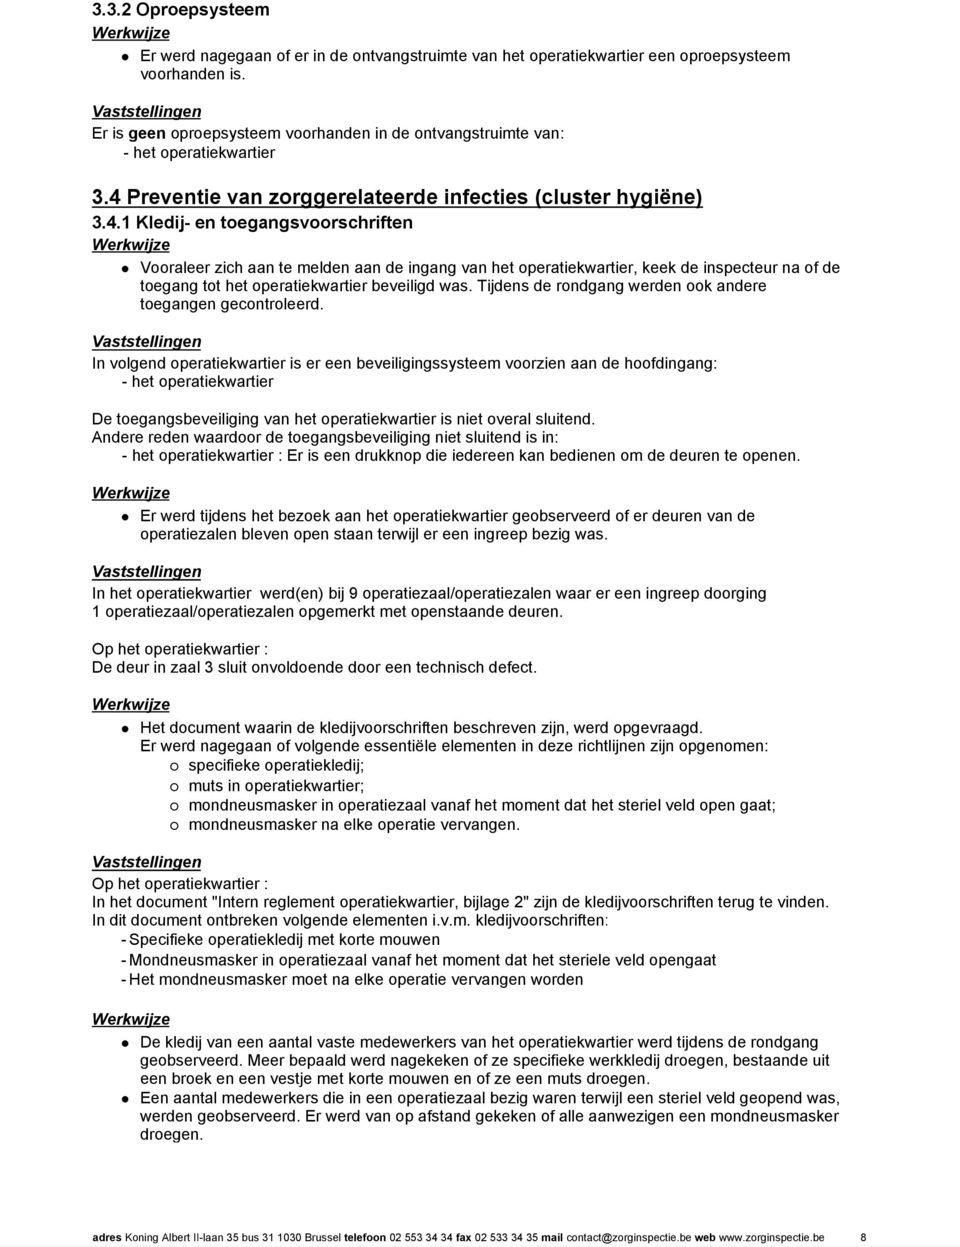 Preventie van zorggerelateerde infecties (cluster hygiëne) 3.4.